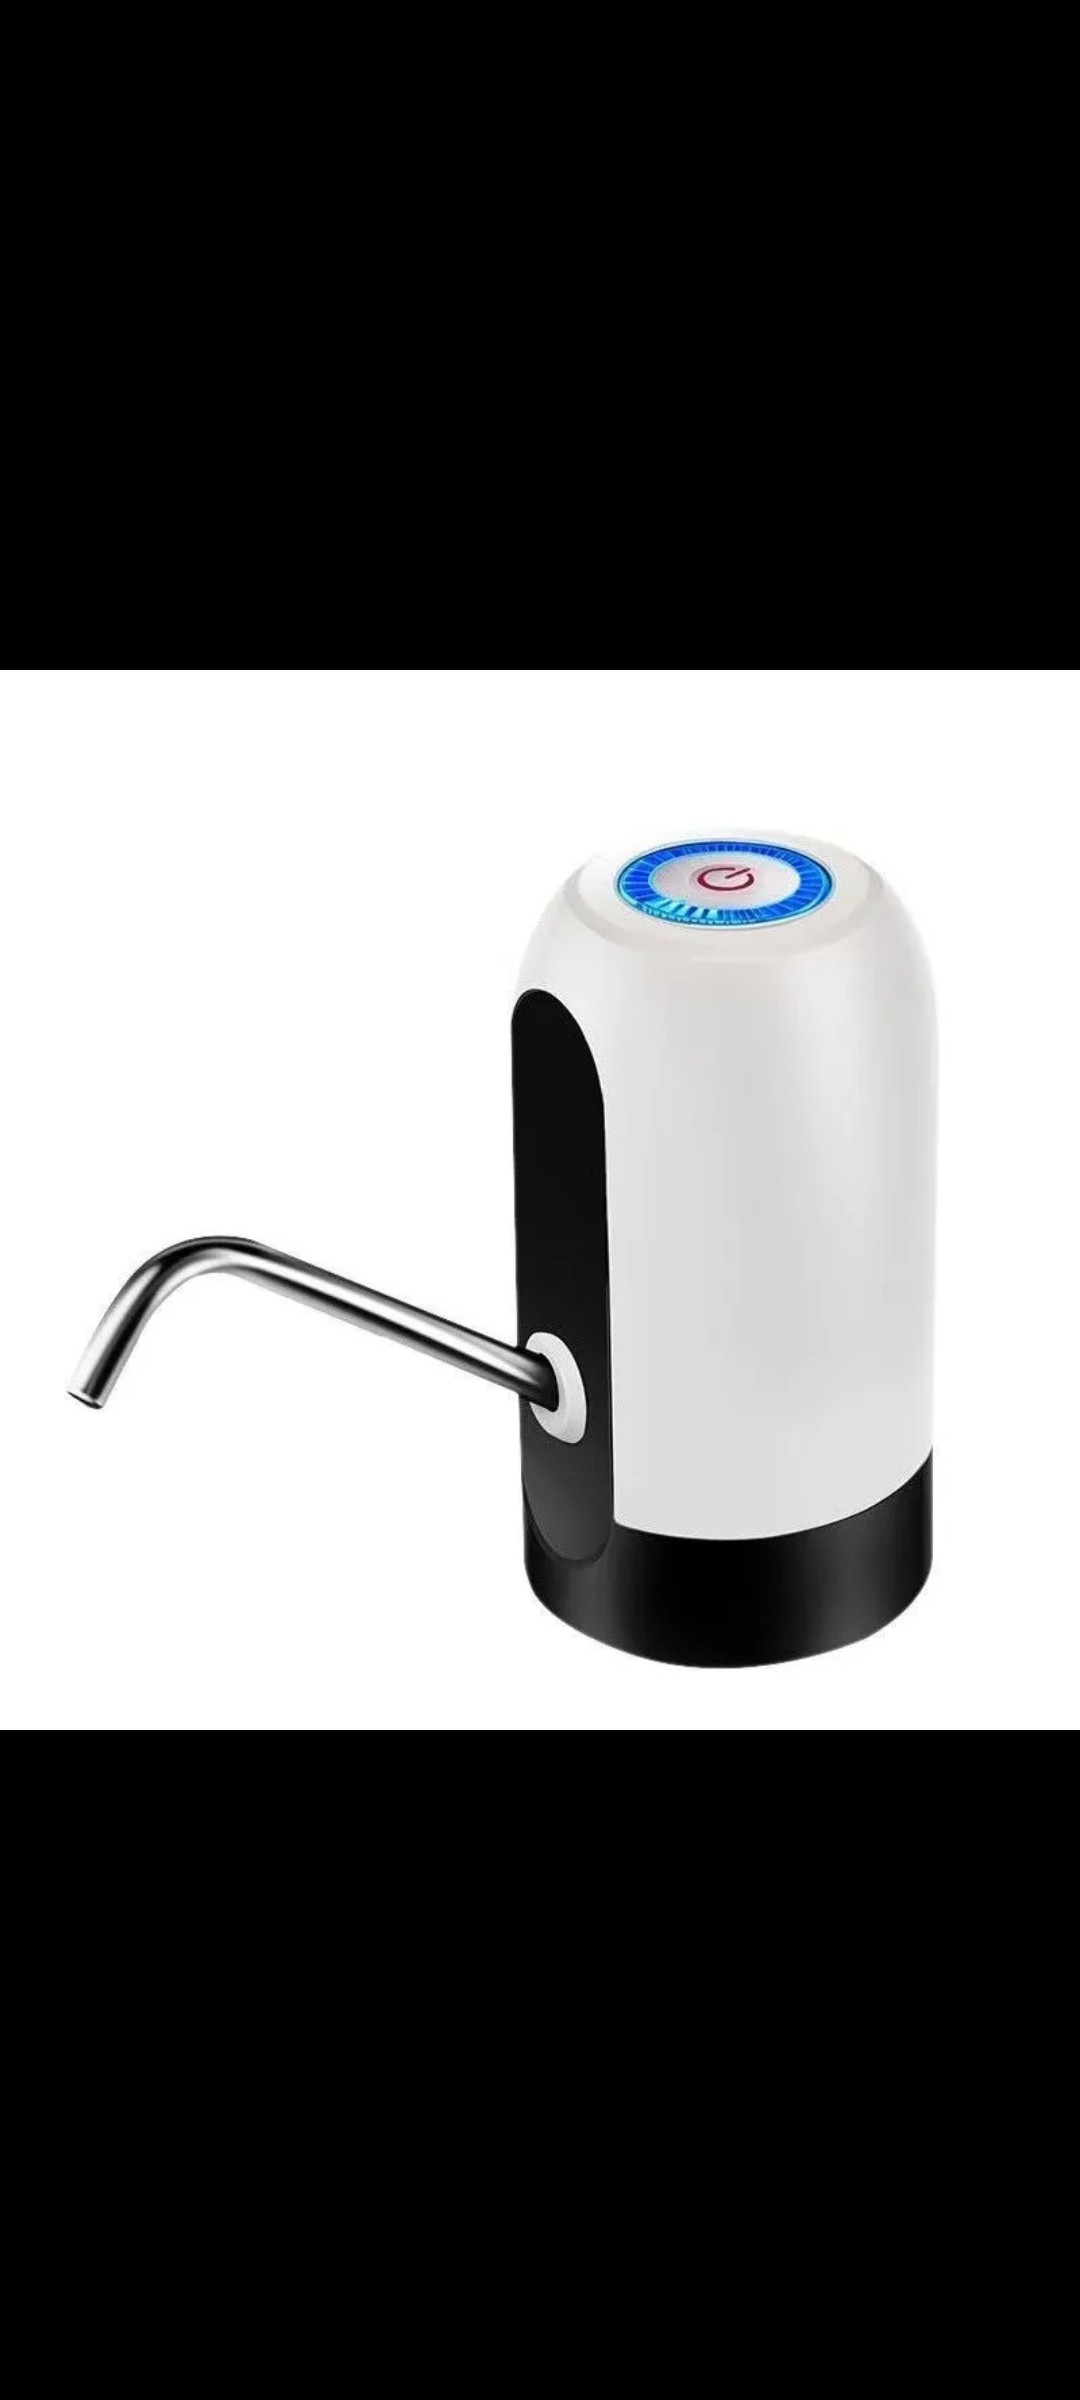 ເຄື່ອງກົດນ້ຳອັດຕະໂນມັດ Automatic Water Dispenser ຍີ່ຫໍ້: Super Mary. ບໍ່ຕ້ອງຍົກຍໍຕຸກນ້ຳໃຫ້ໜັກ, ສາມາດຖອດມາທຳຄວາມສະອາດໄດ້